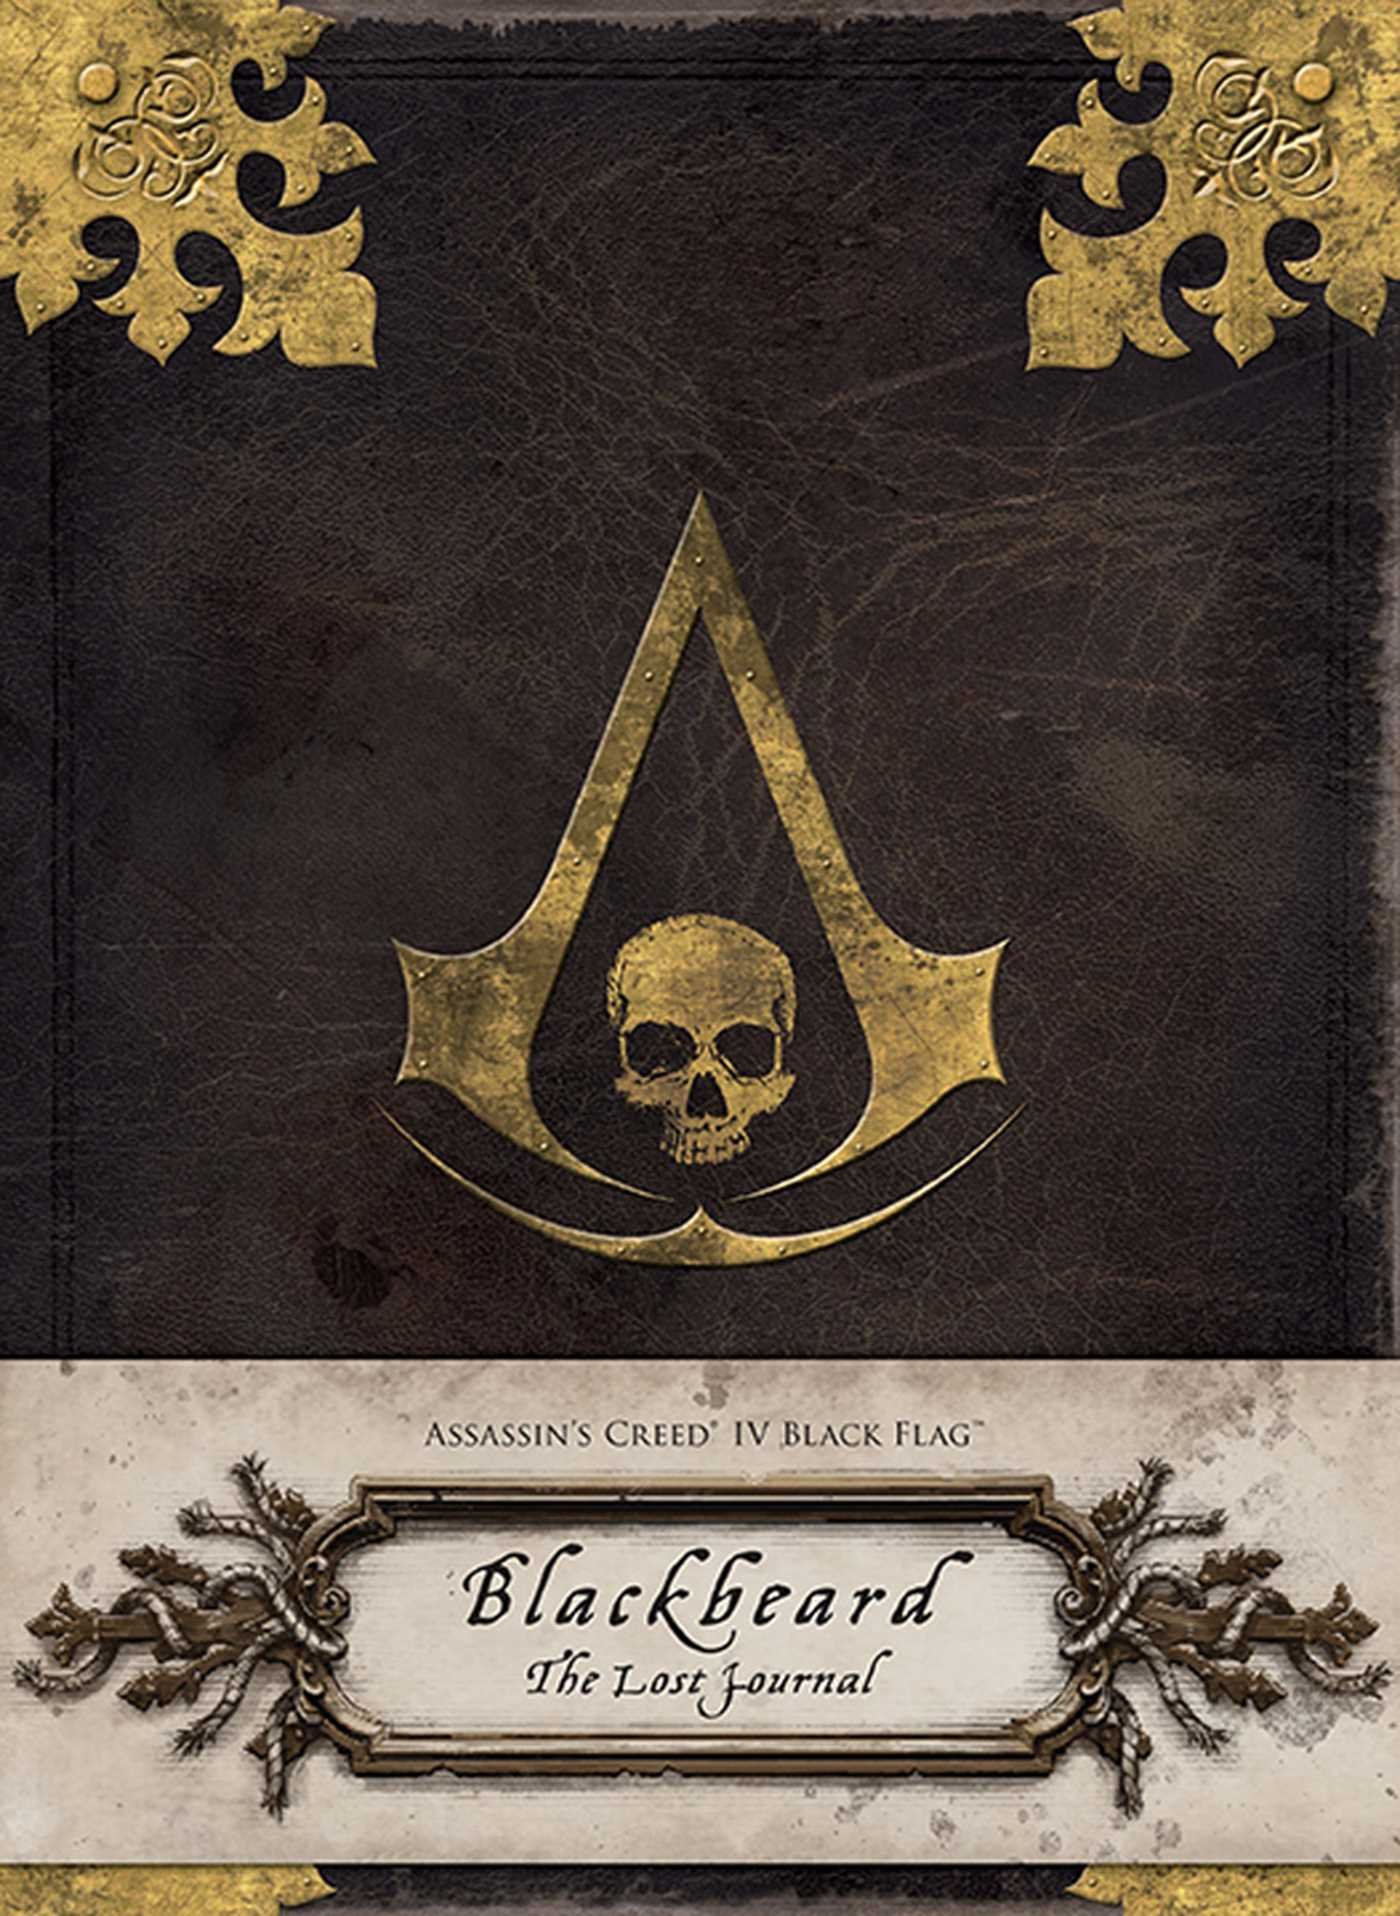 Assassin's Creed IV Black Flag: Blackbeard: The Lost Journal